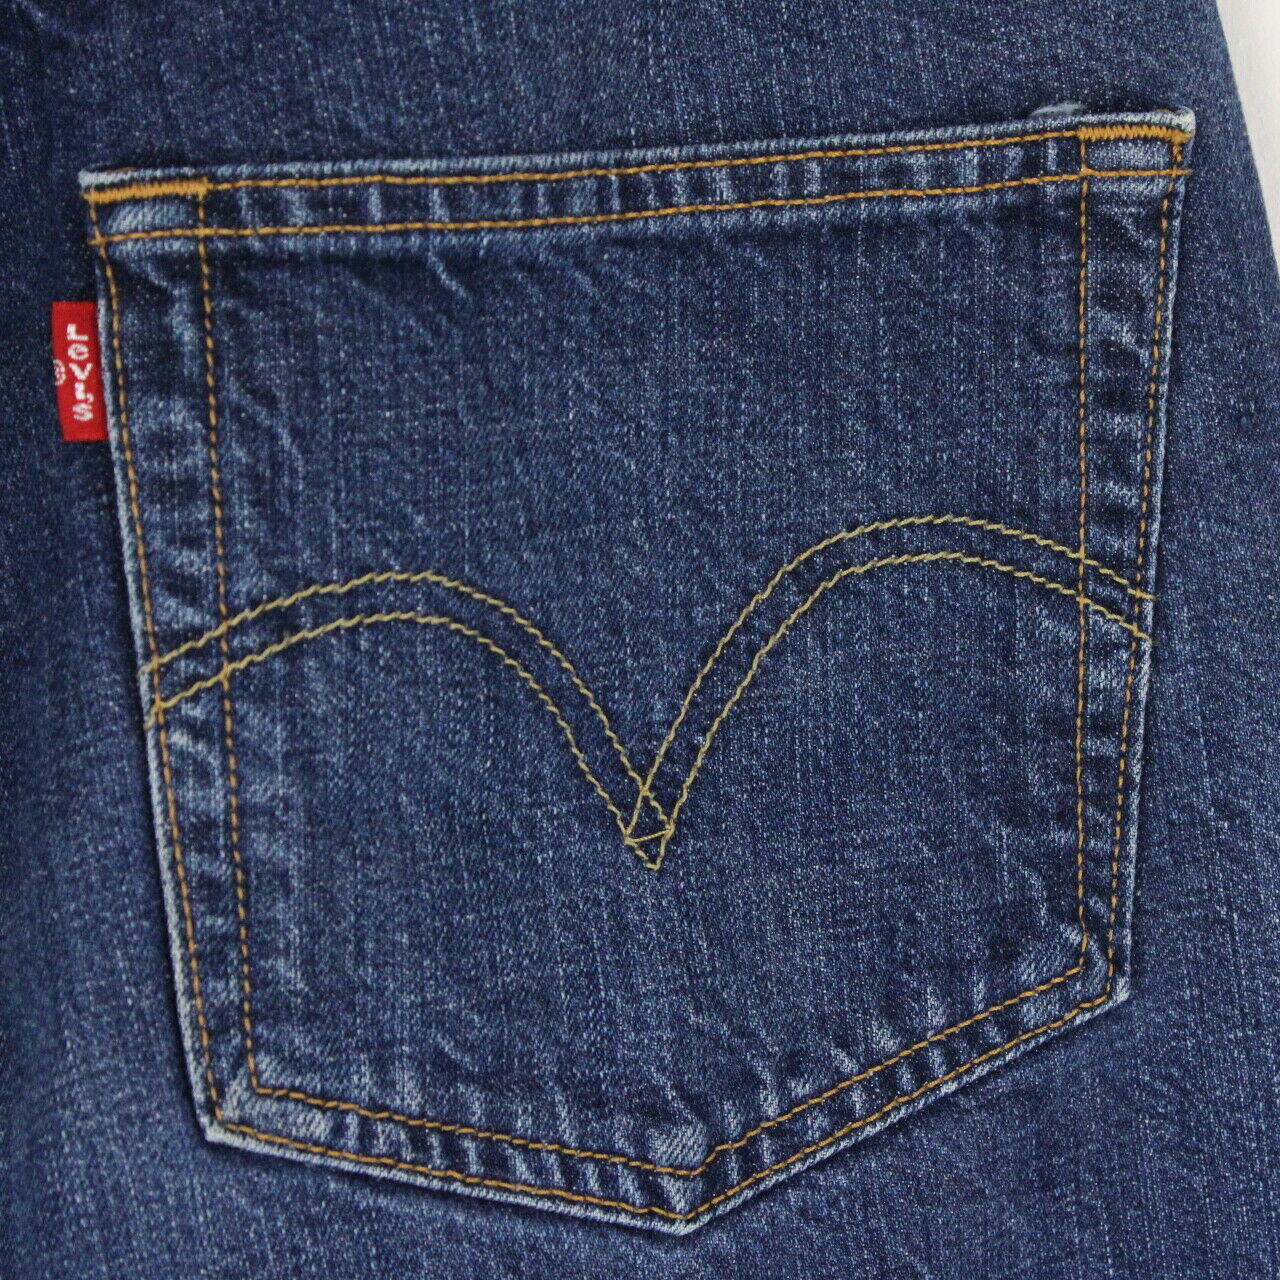 Mens LEVIS 501 Jeans Dark Blue | W34 L28